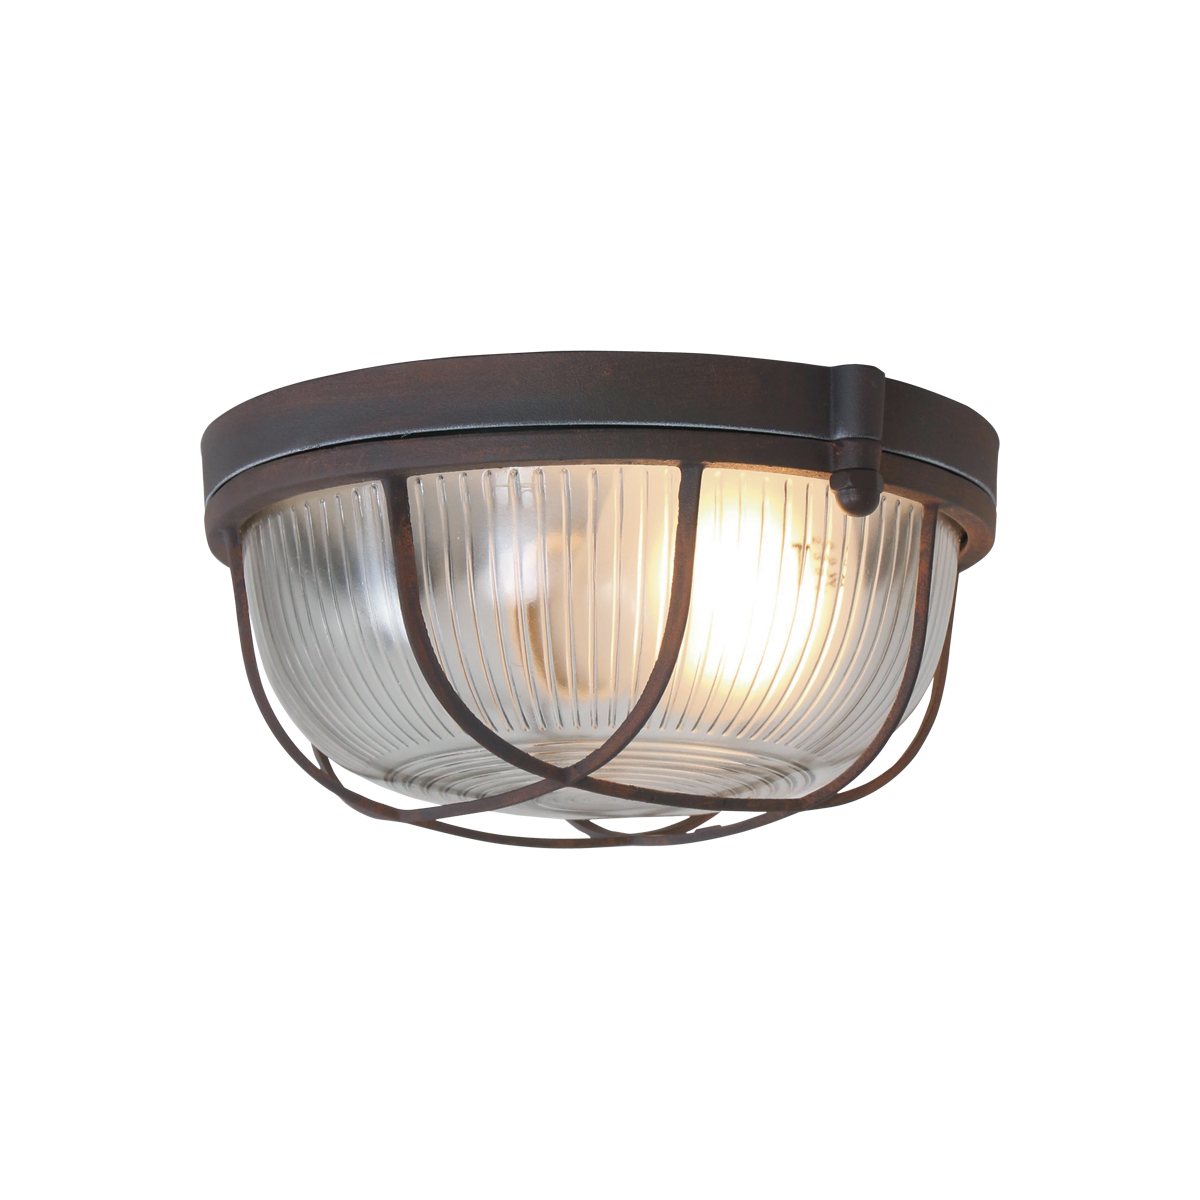 Mexlite LED Deckenleuchte Industrie-Design Vintage Look braun